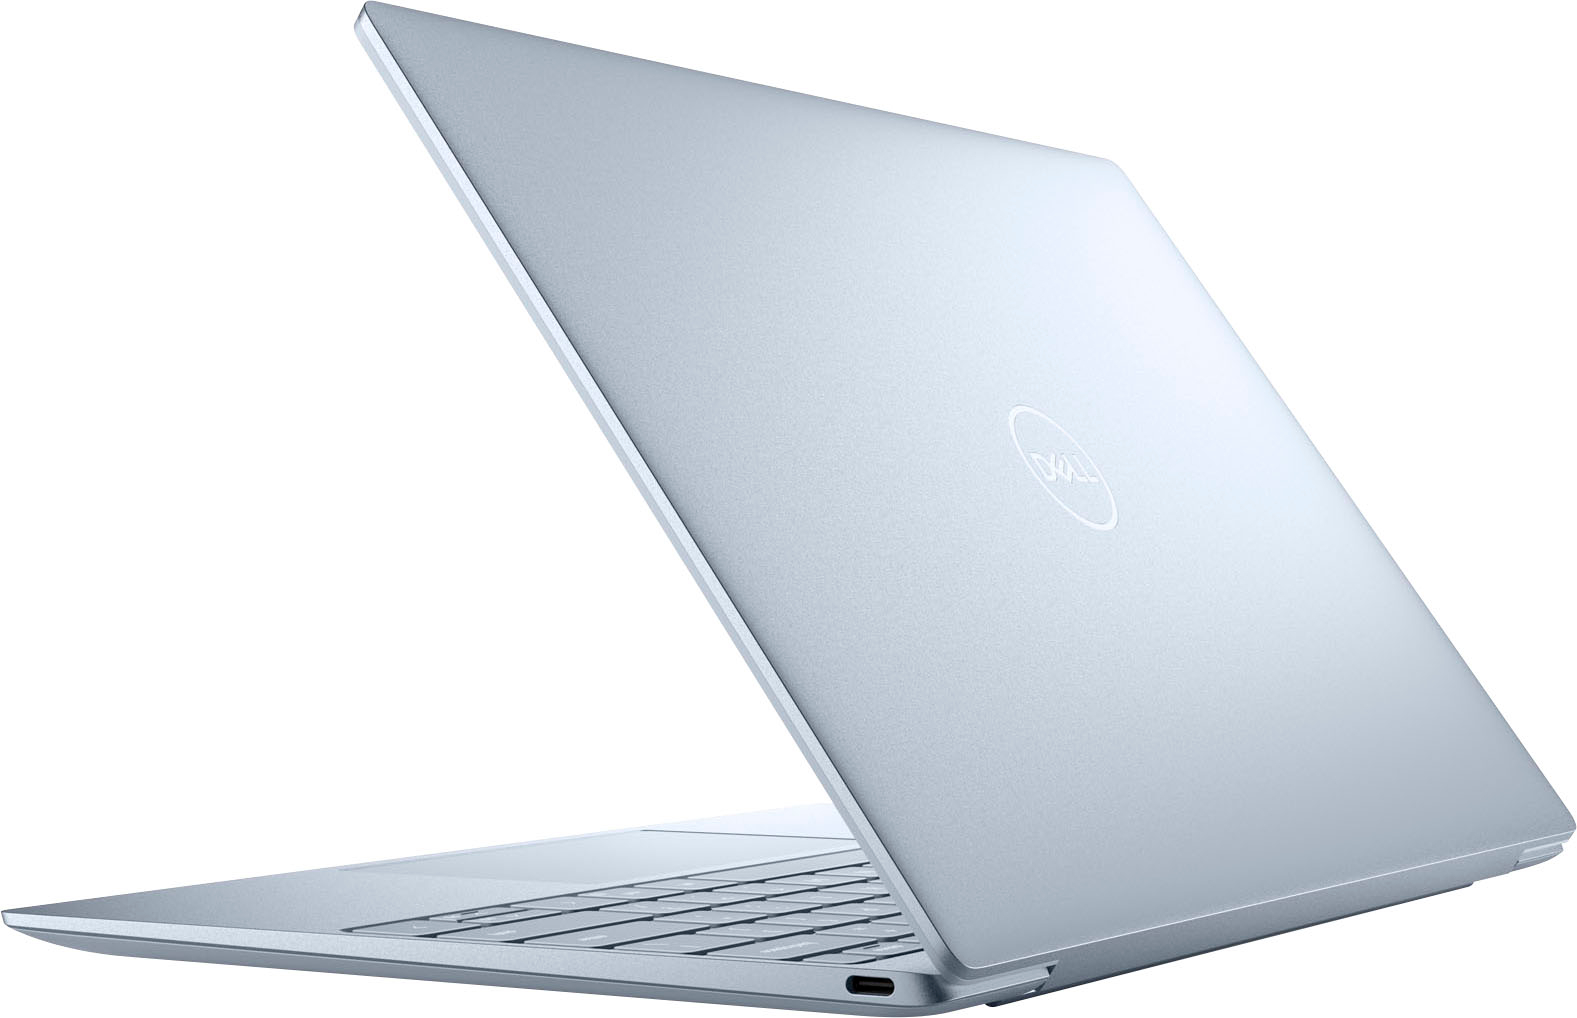 Dell launches 13th Gen Intel Core Precision laptops - AEC Magazine